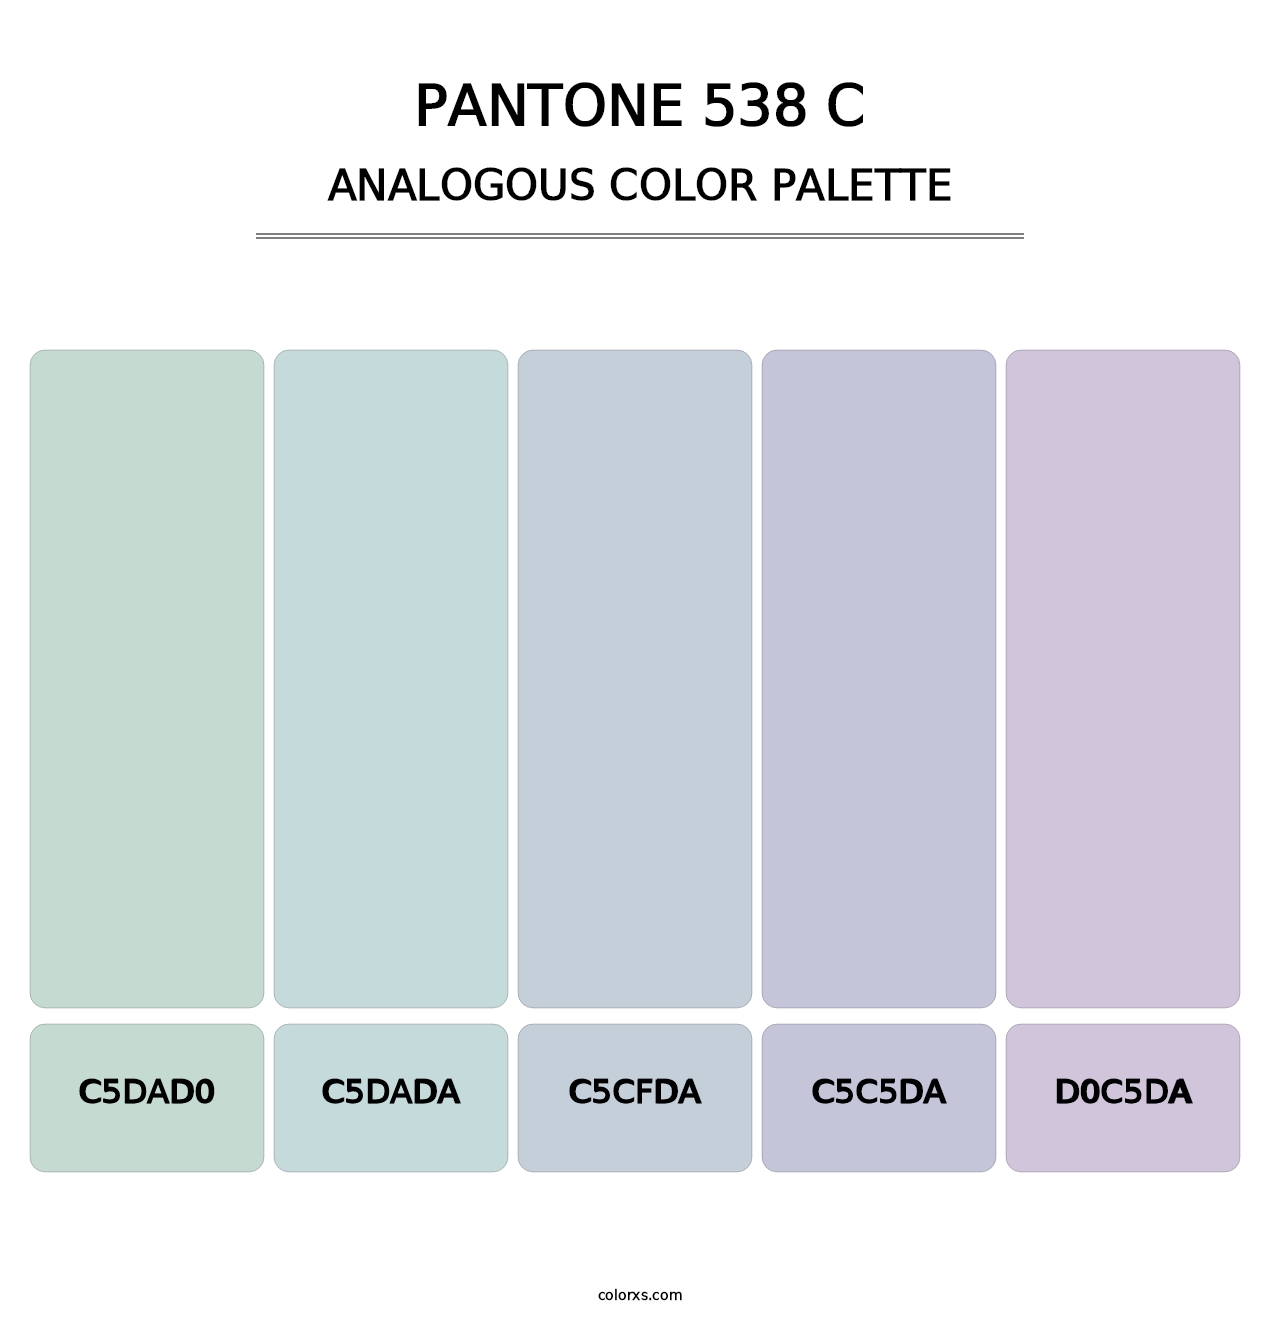 PANTONE 538 C - Analogous Color Palette